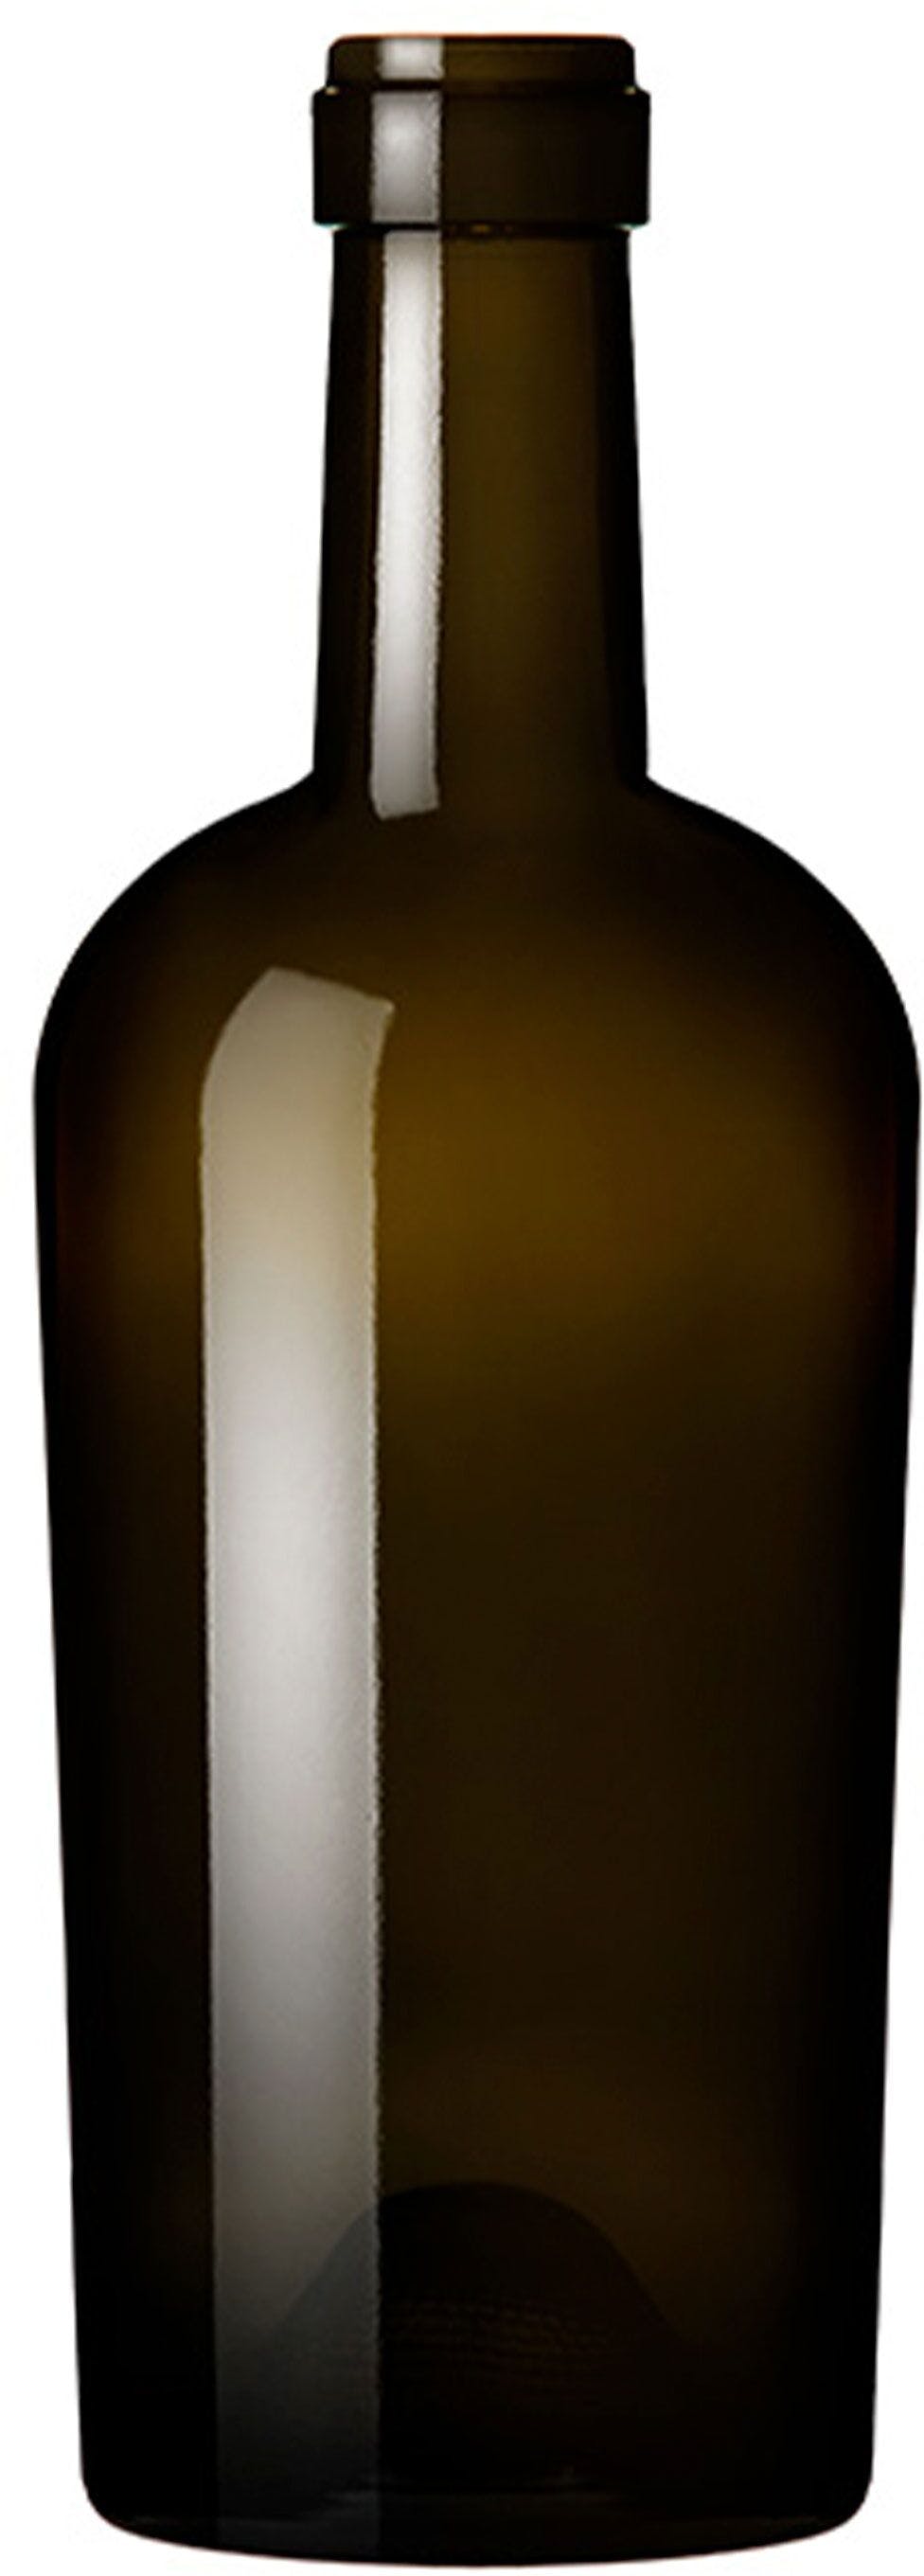 Bottiglia bordolese   REGINE 500 ml BG-Sughero